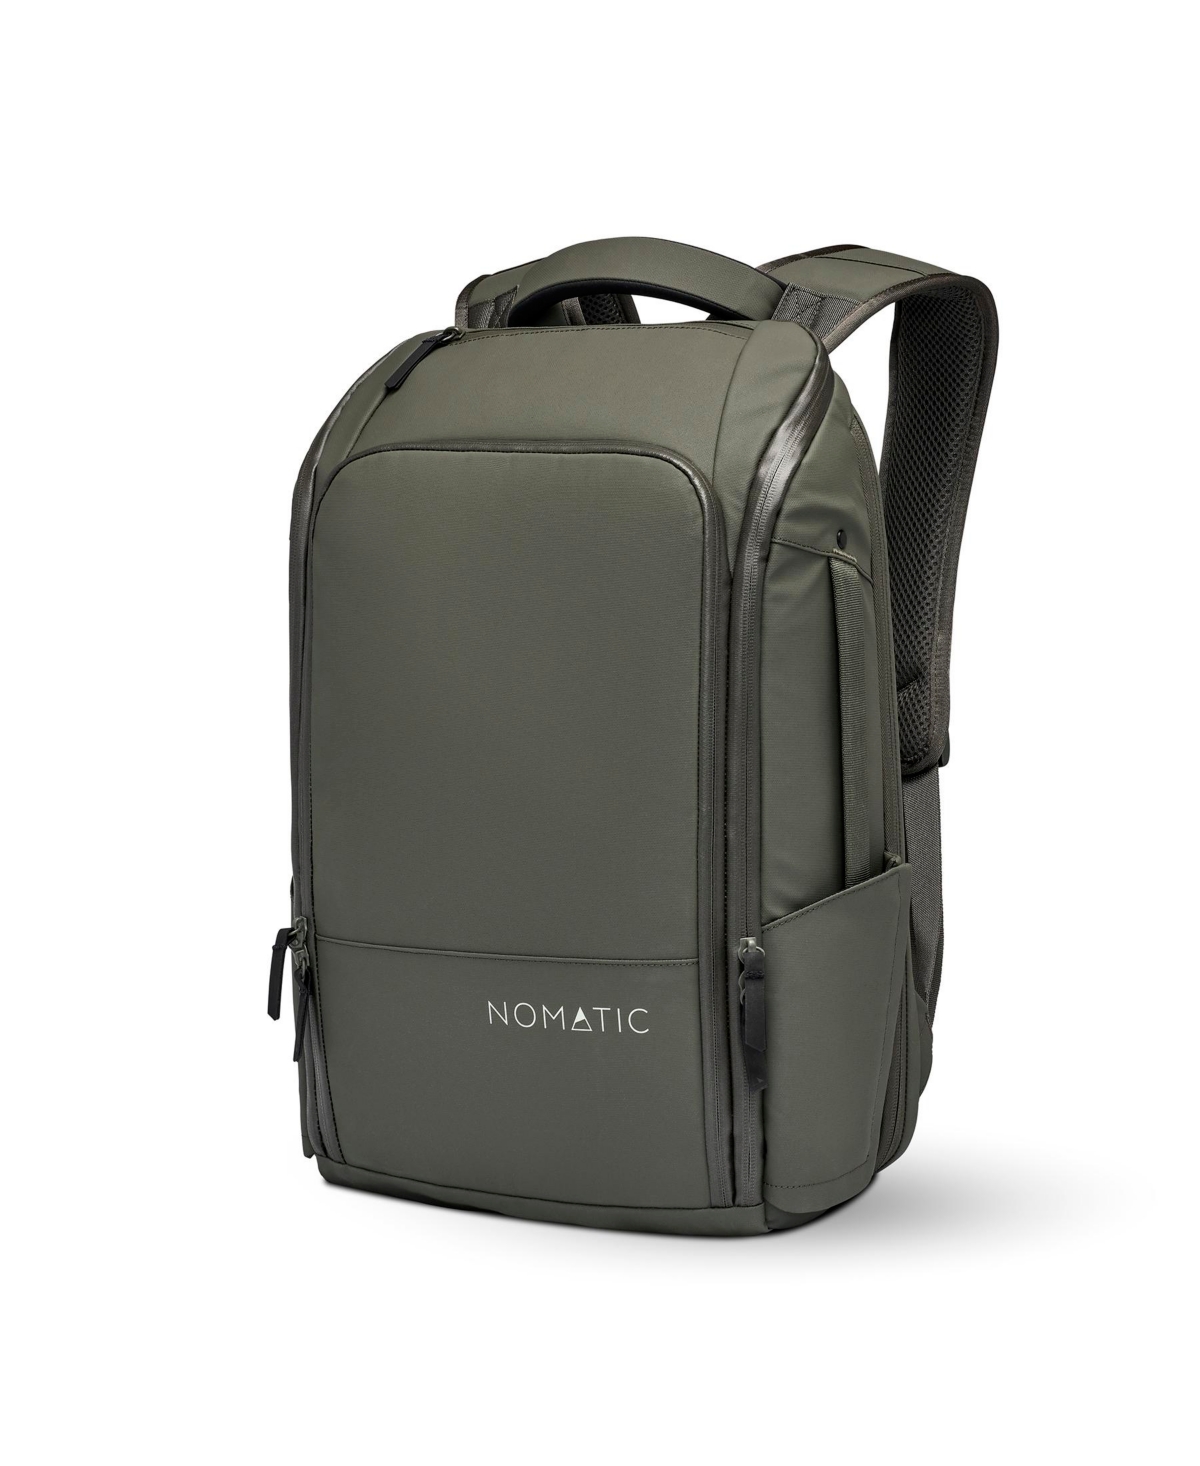 Backpack - 20L Water Resistant Business Laptop Bag - Black